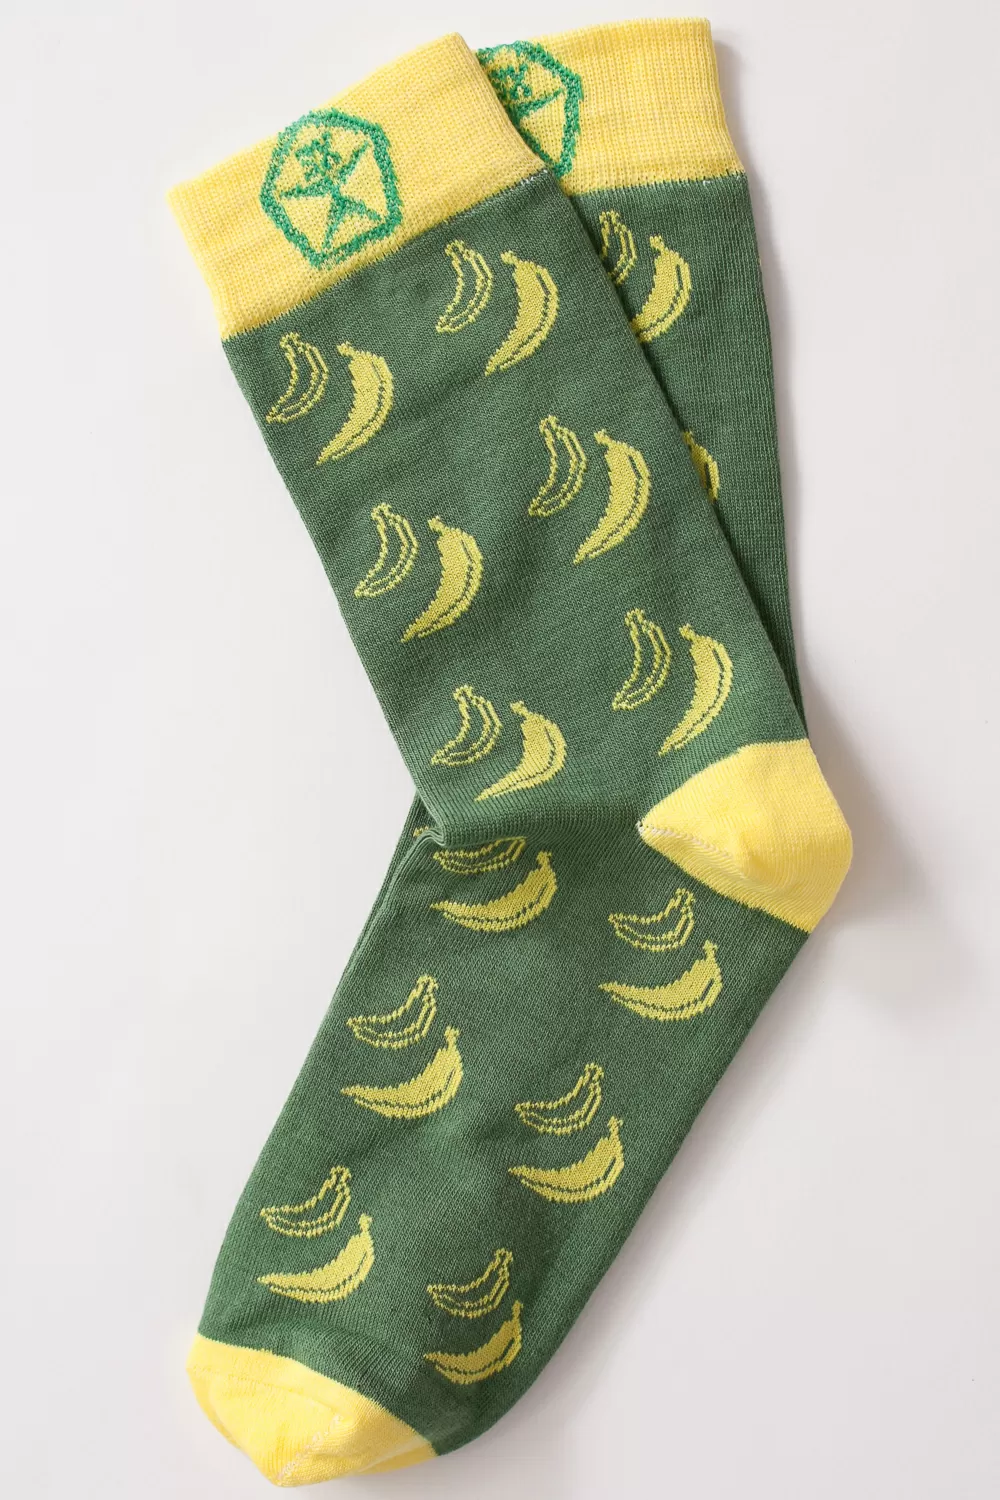 Носки Запорожец Банан женские (Зеленые)